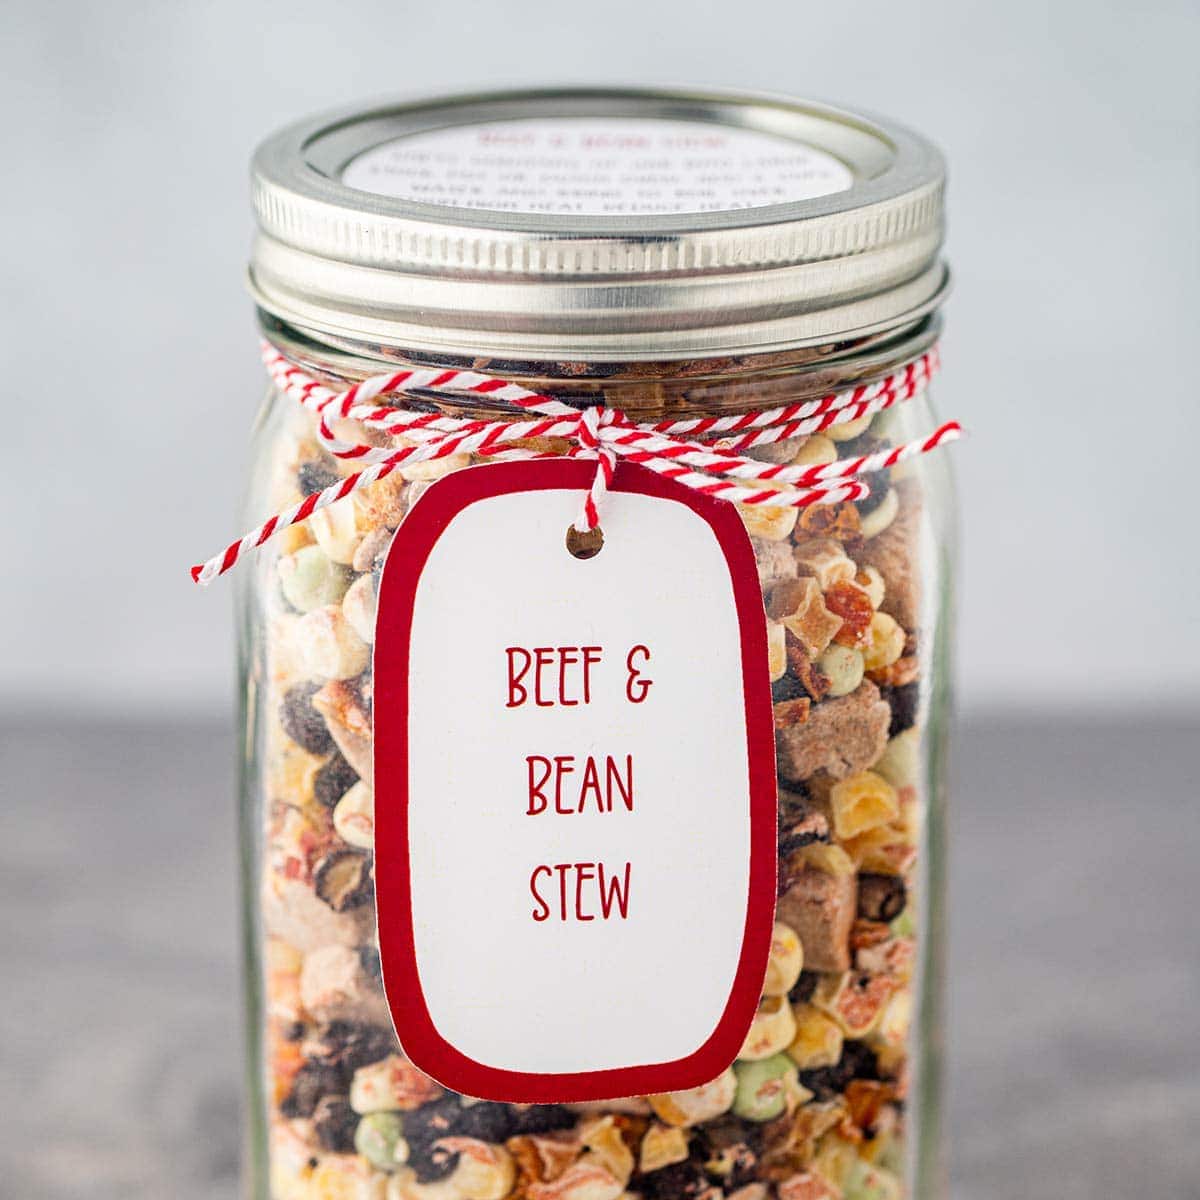 Beef & Bean Stew in a Jar - Make-Ahead Meal Mom